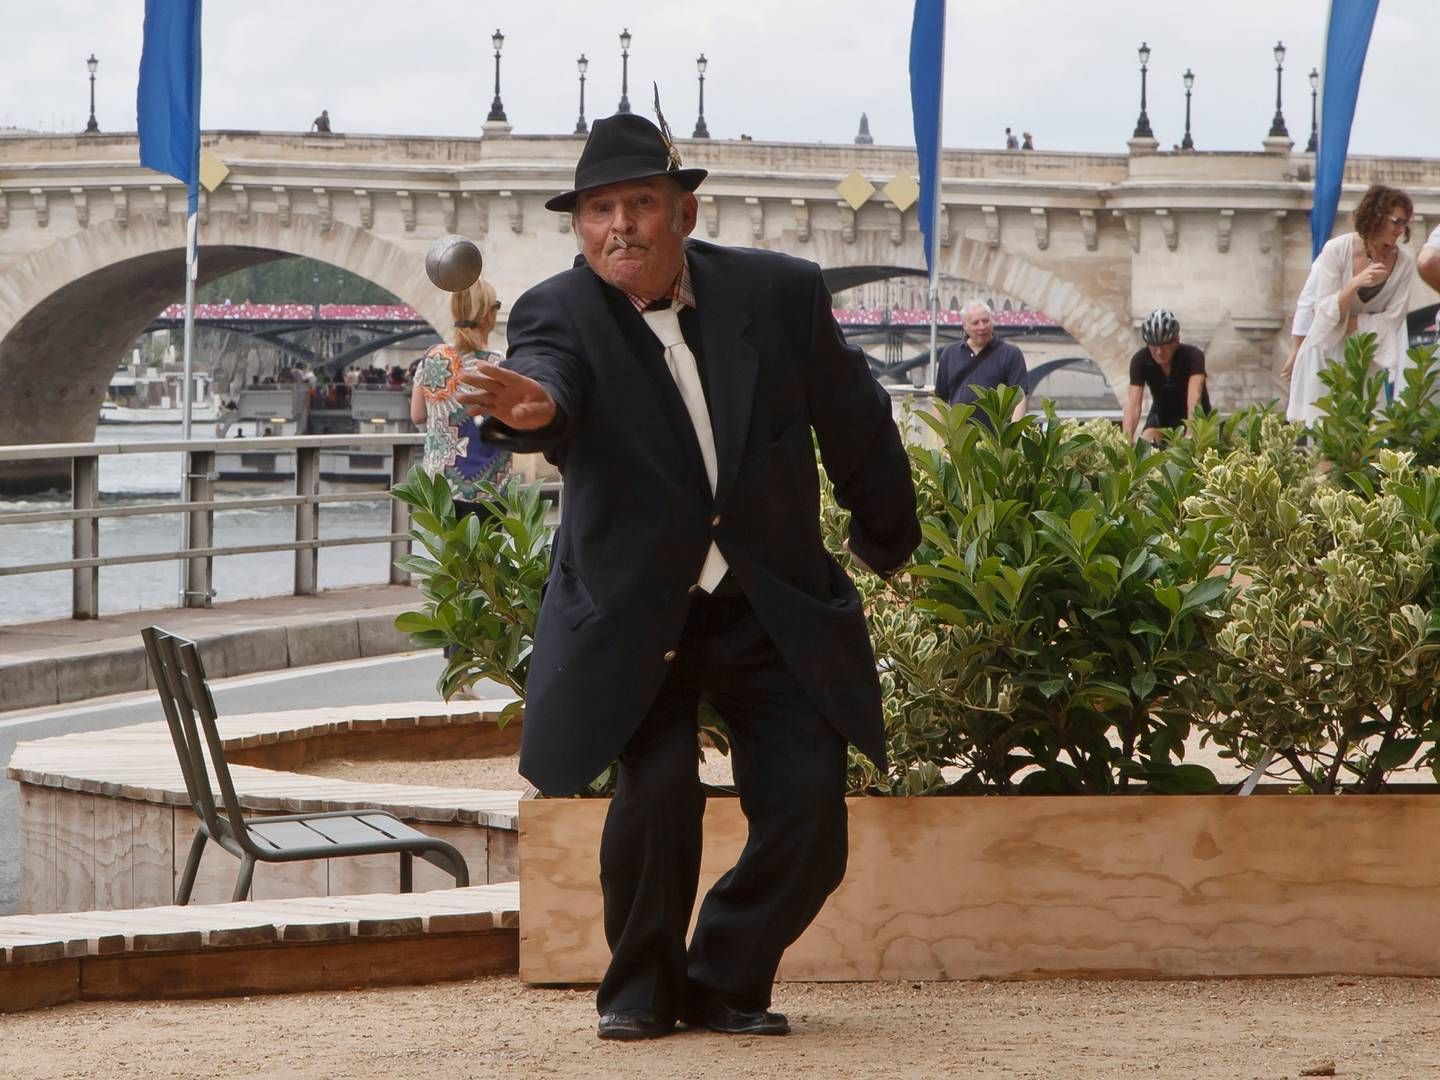 Petanque-spiller i Paris i Frankrig. Af: Polfoto. | Foto: Polfoto